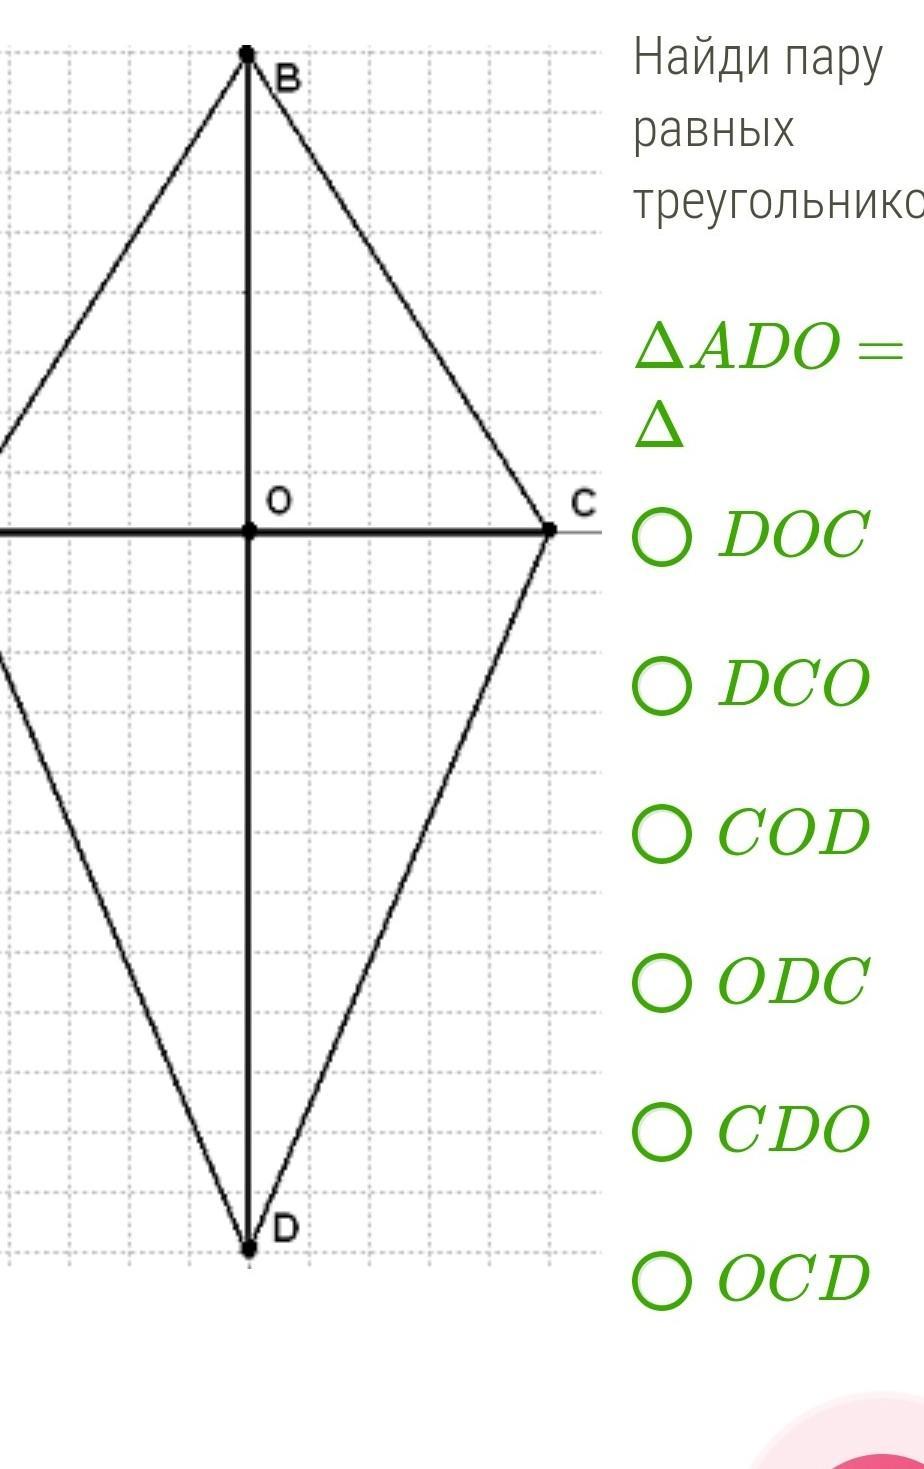 Четырехугольник с 1 осью симметрии